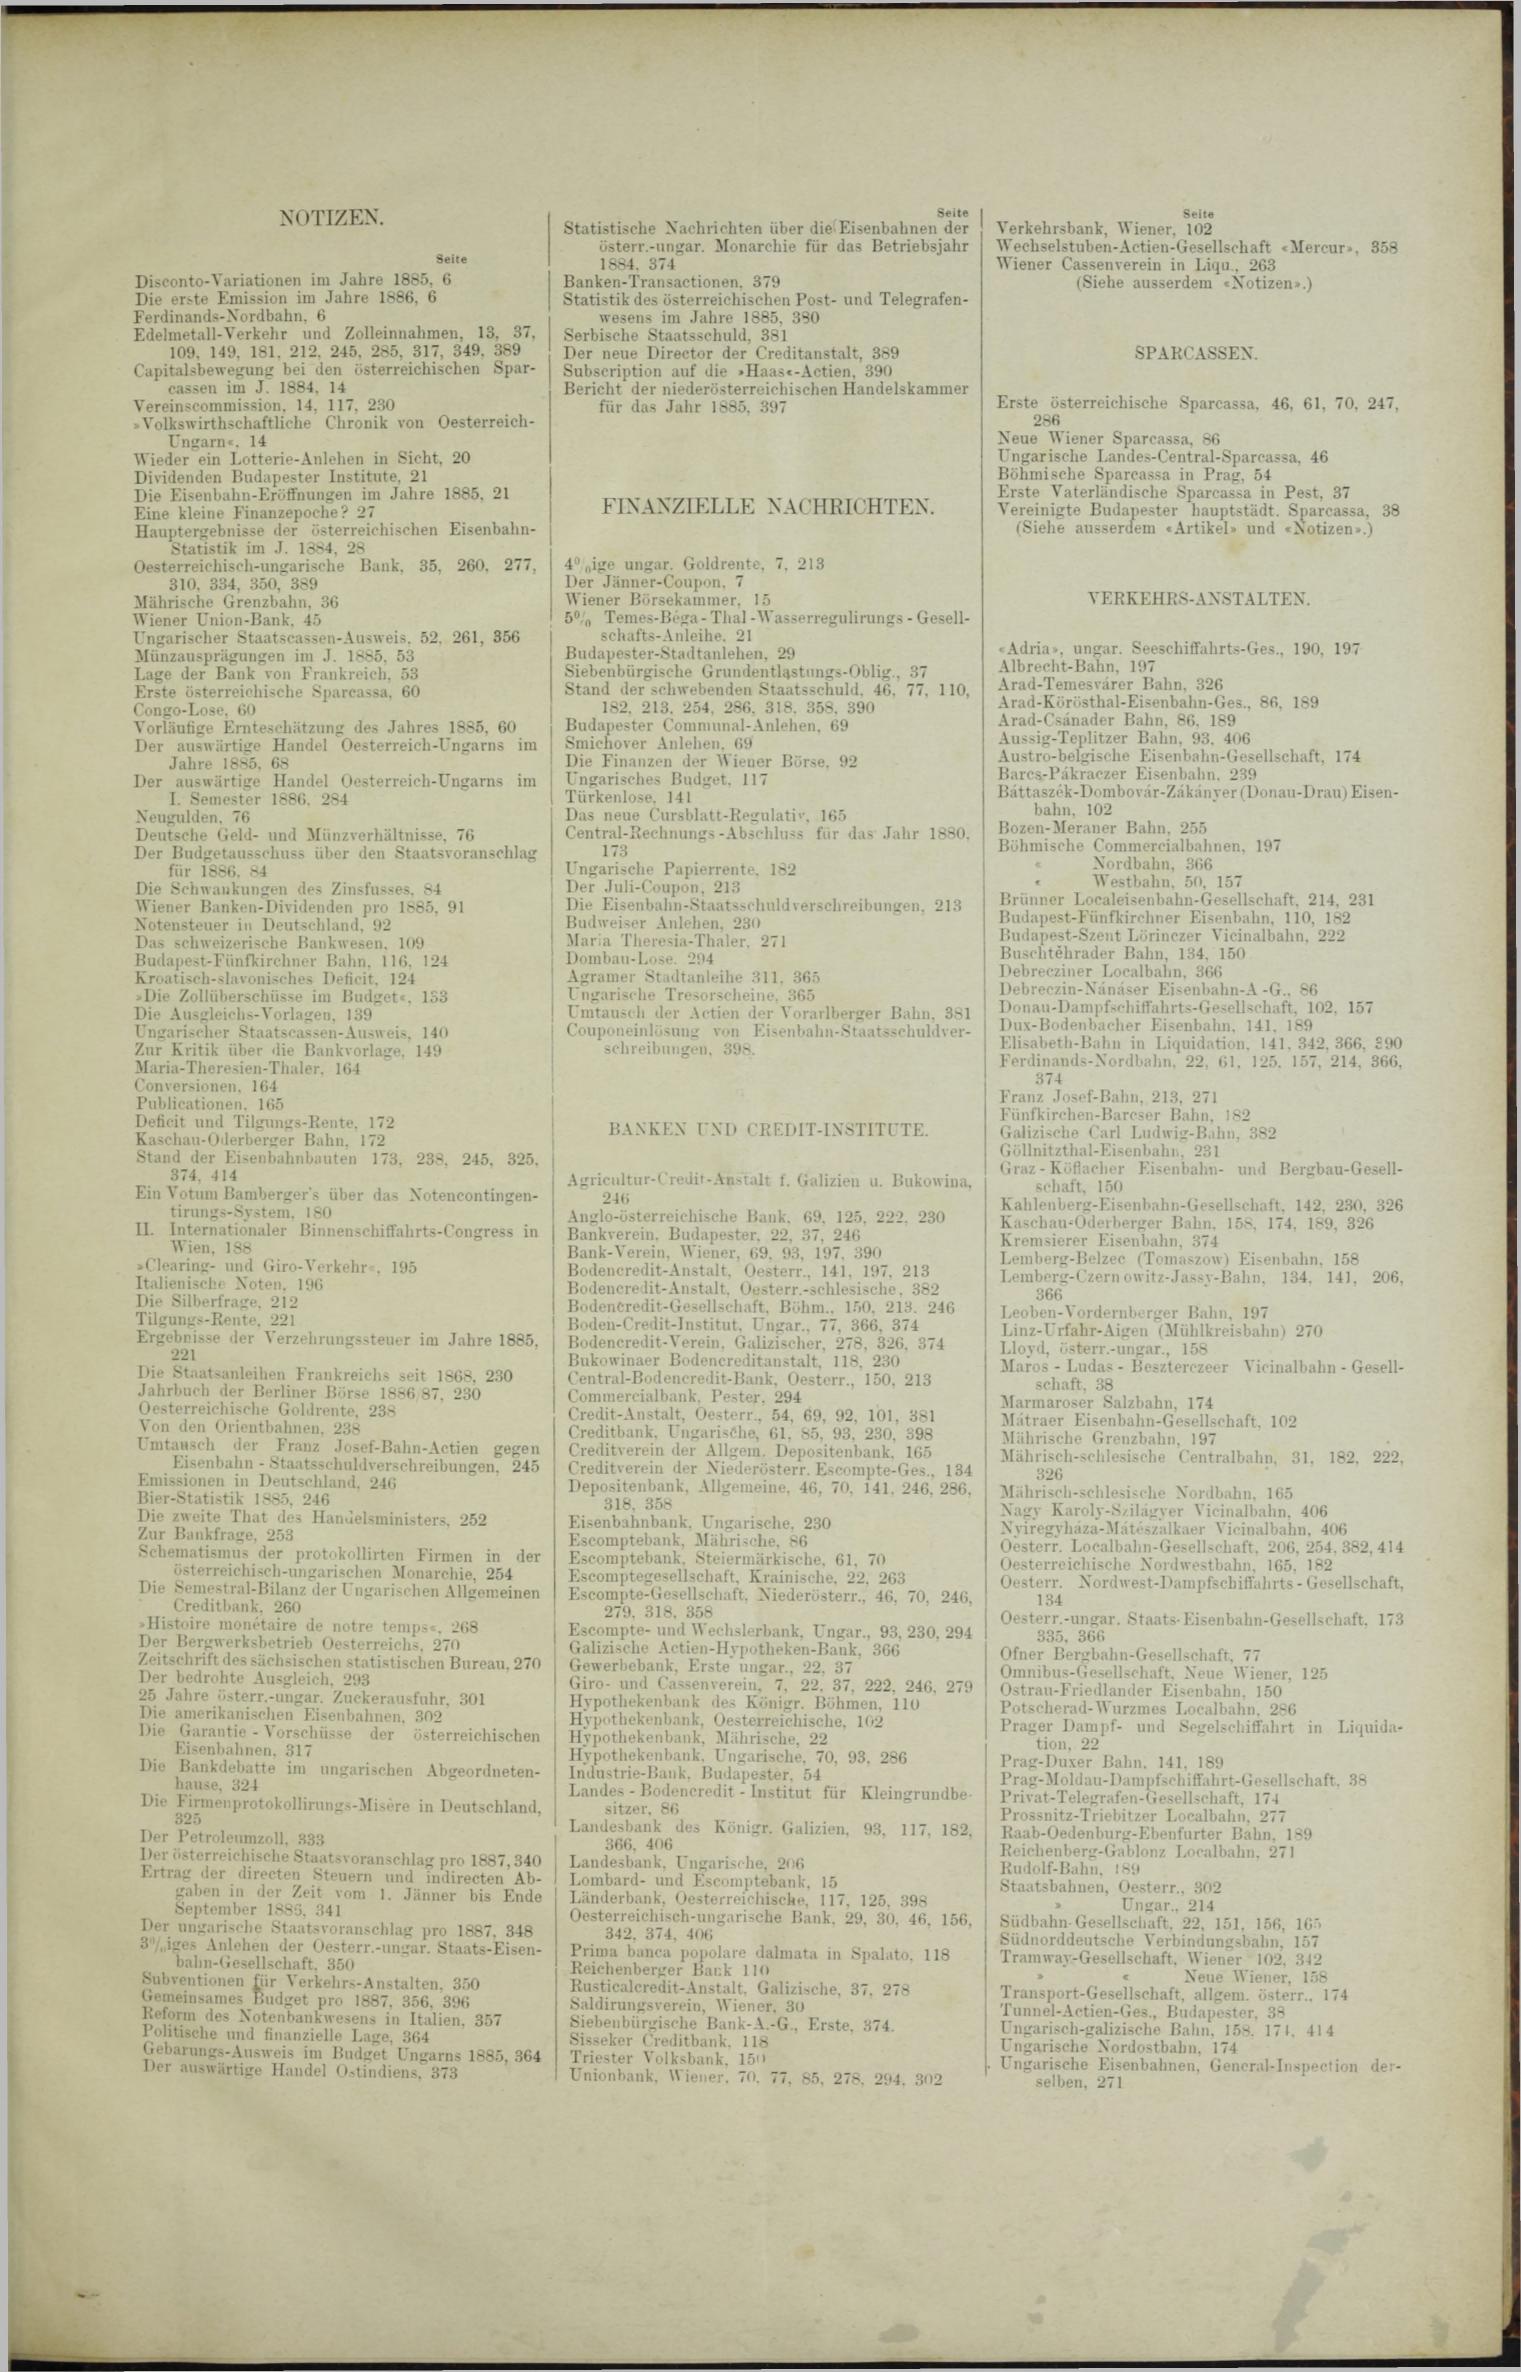 Der Tresor 15.07.1886 - Seite 11